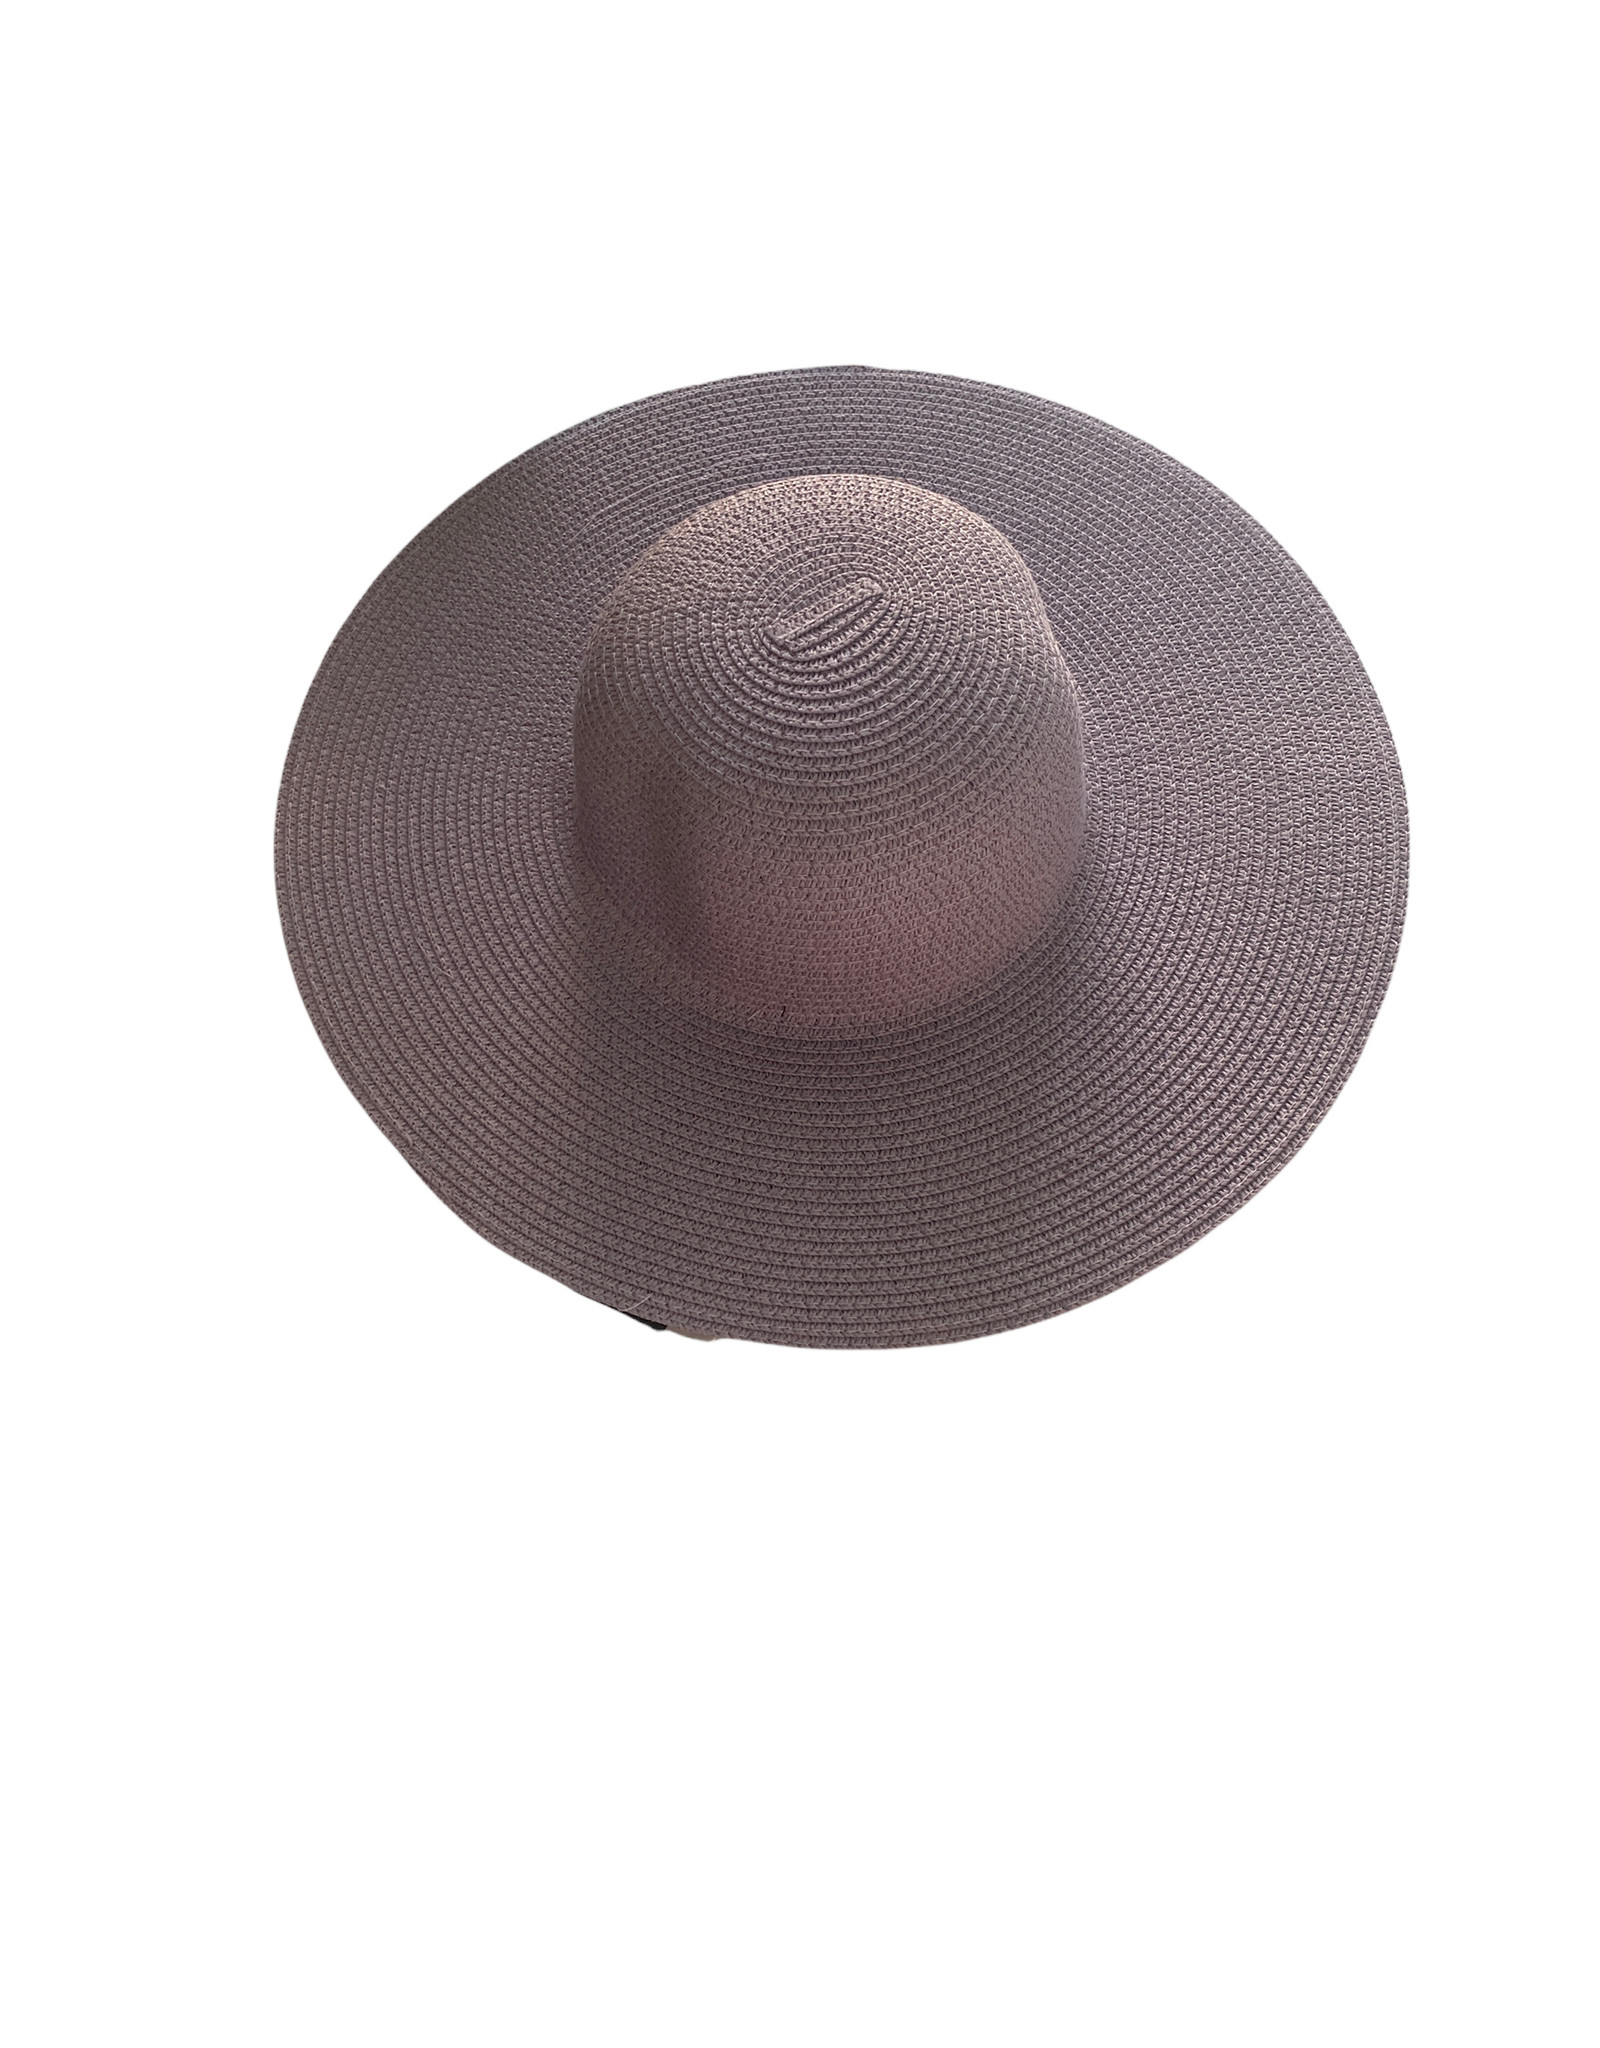 Elegante hoed met grote rand en bolle bovenkant